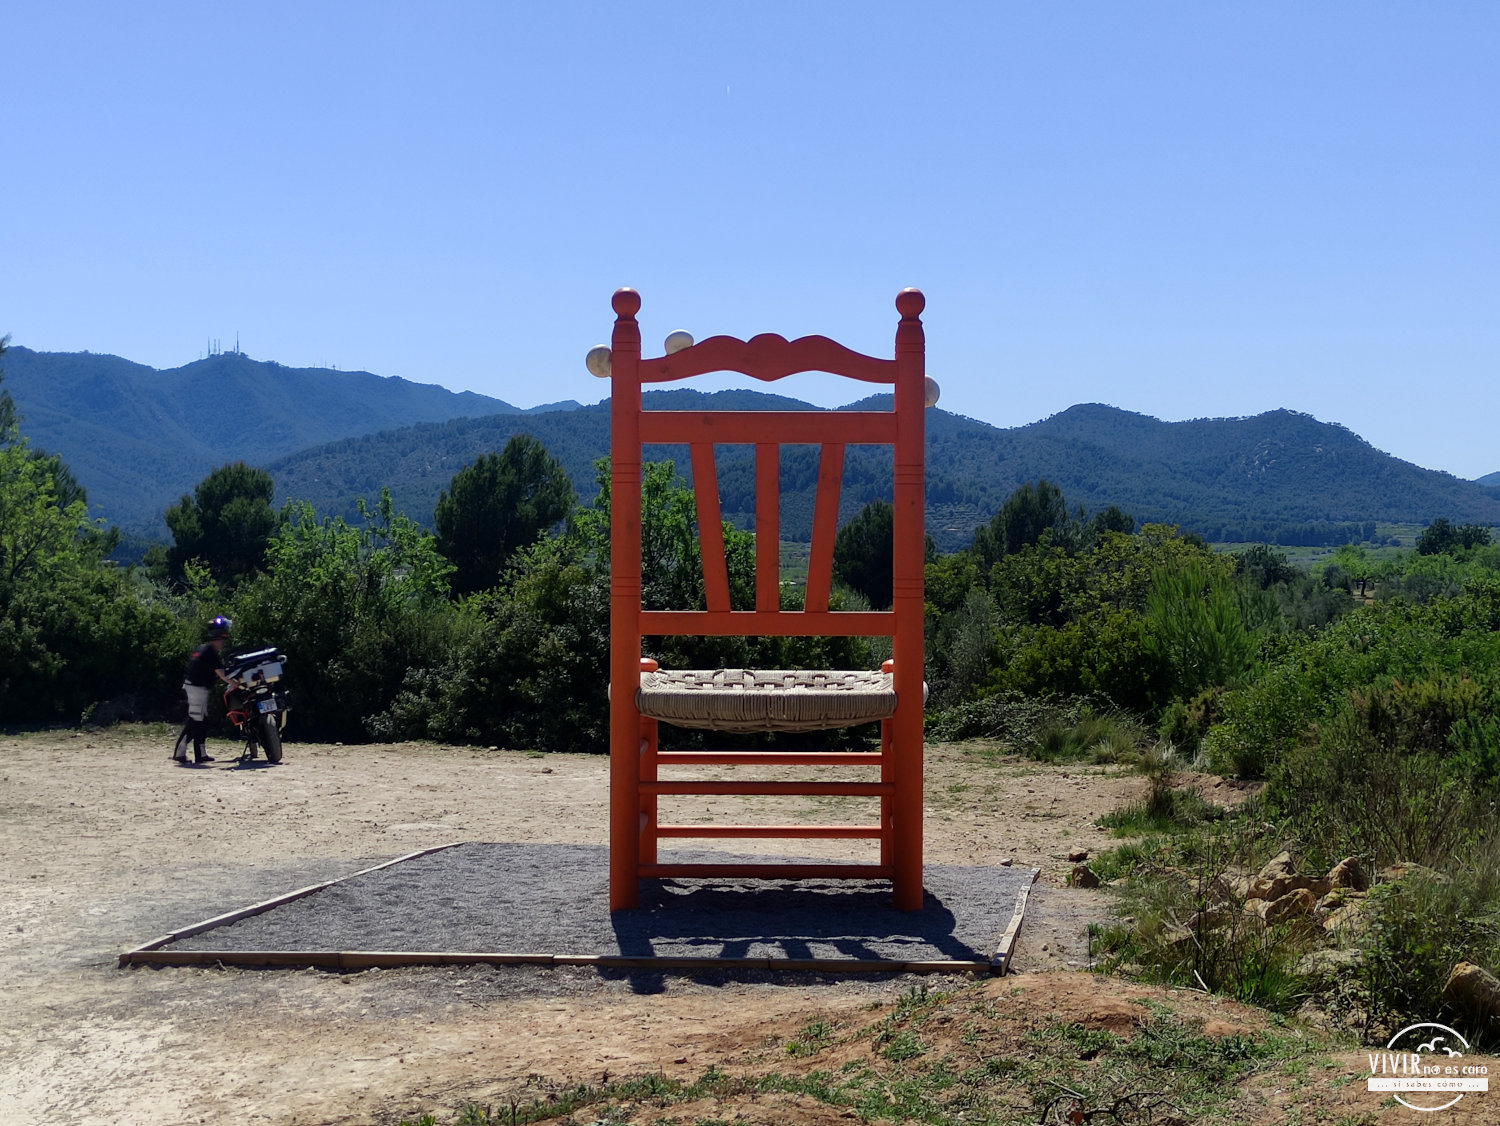 La silla Naranja de Cabanes con vistas al Desierto de las Palmas (Castellón)